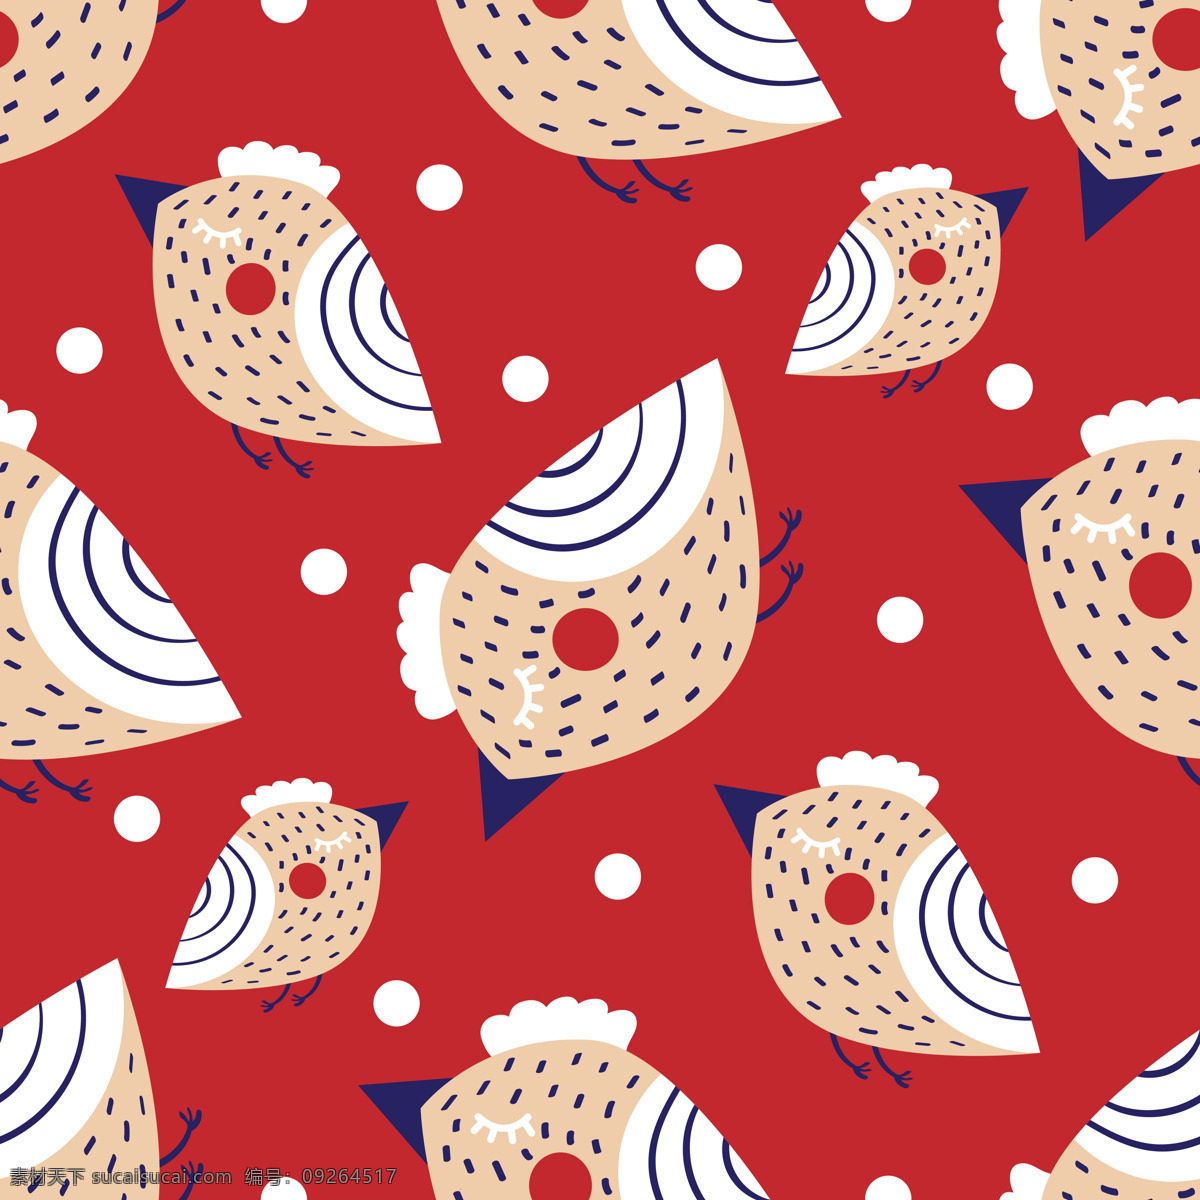 红色 可爱 小鸟 雪花 背景 白色 背景素材 动物 节日 平面素材 设计素材 圆点